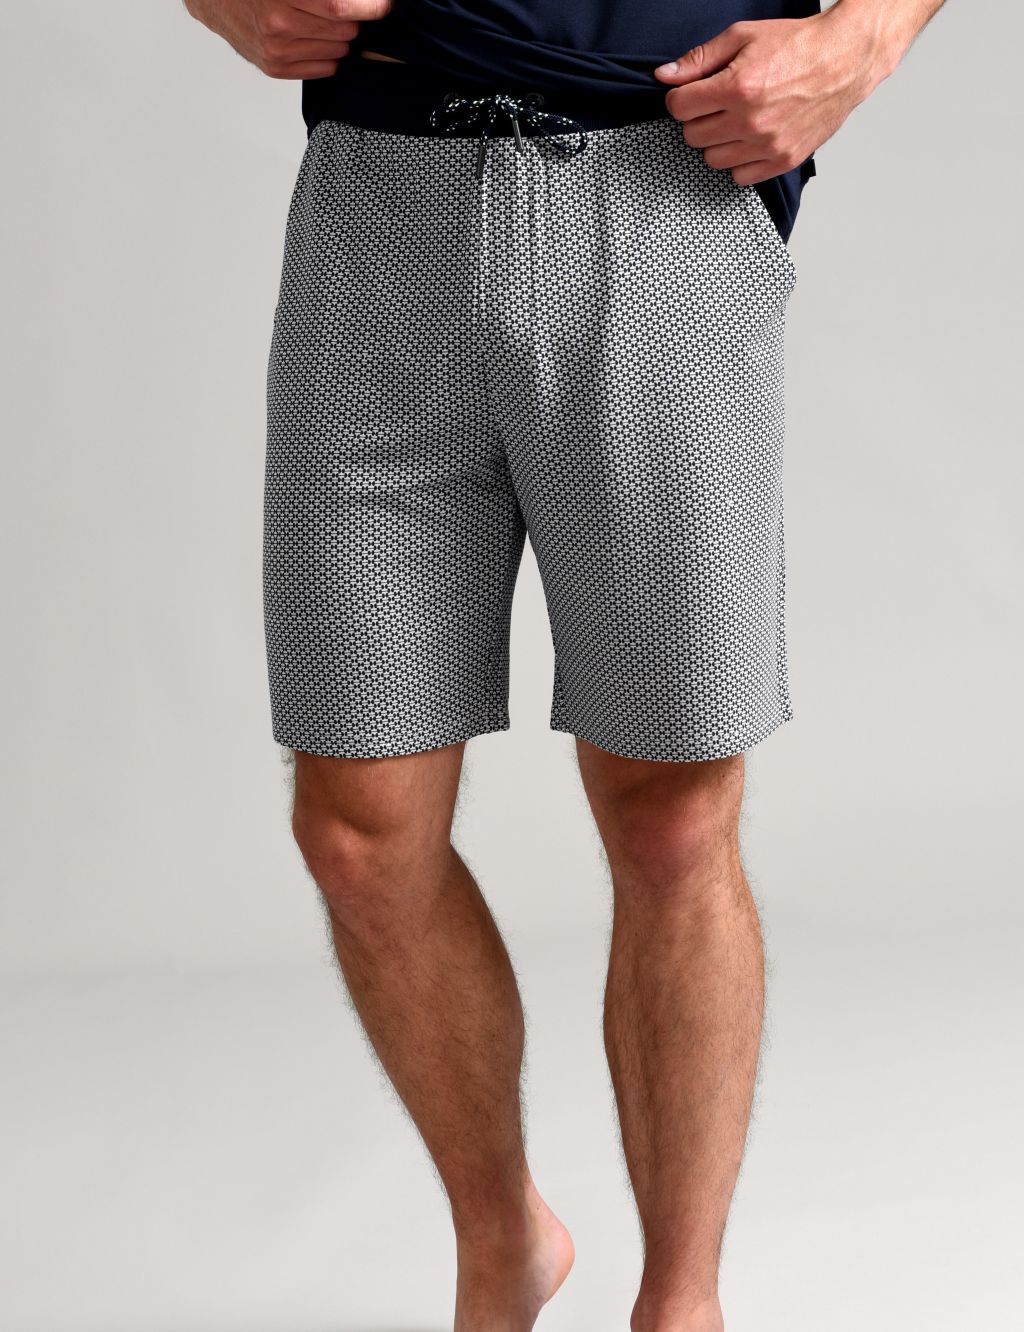 Pyjama Shorts image 1